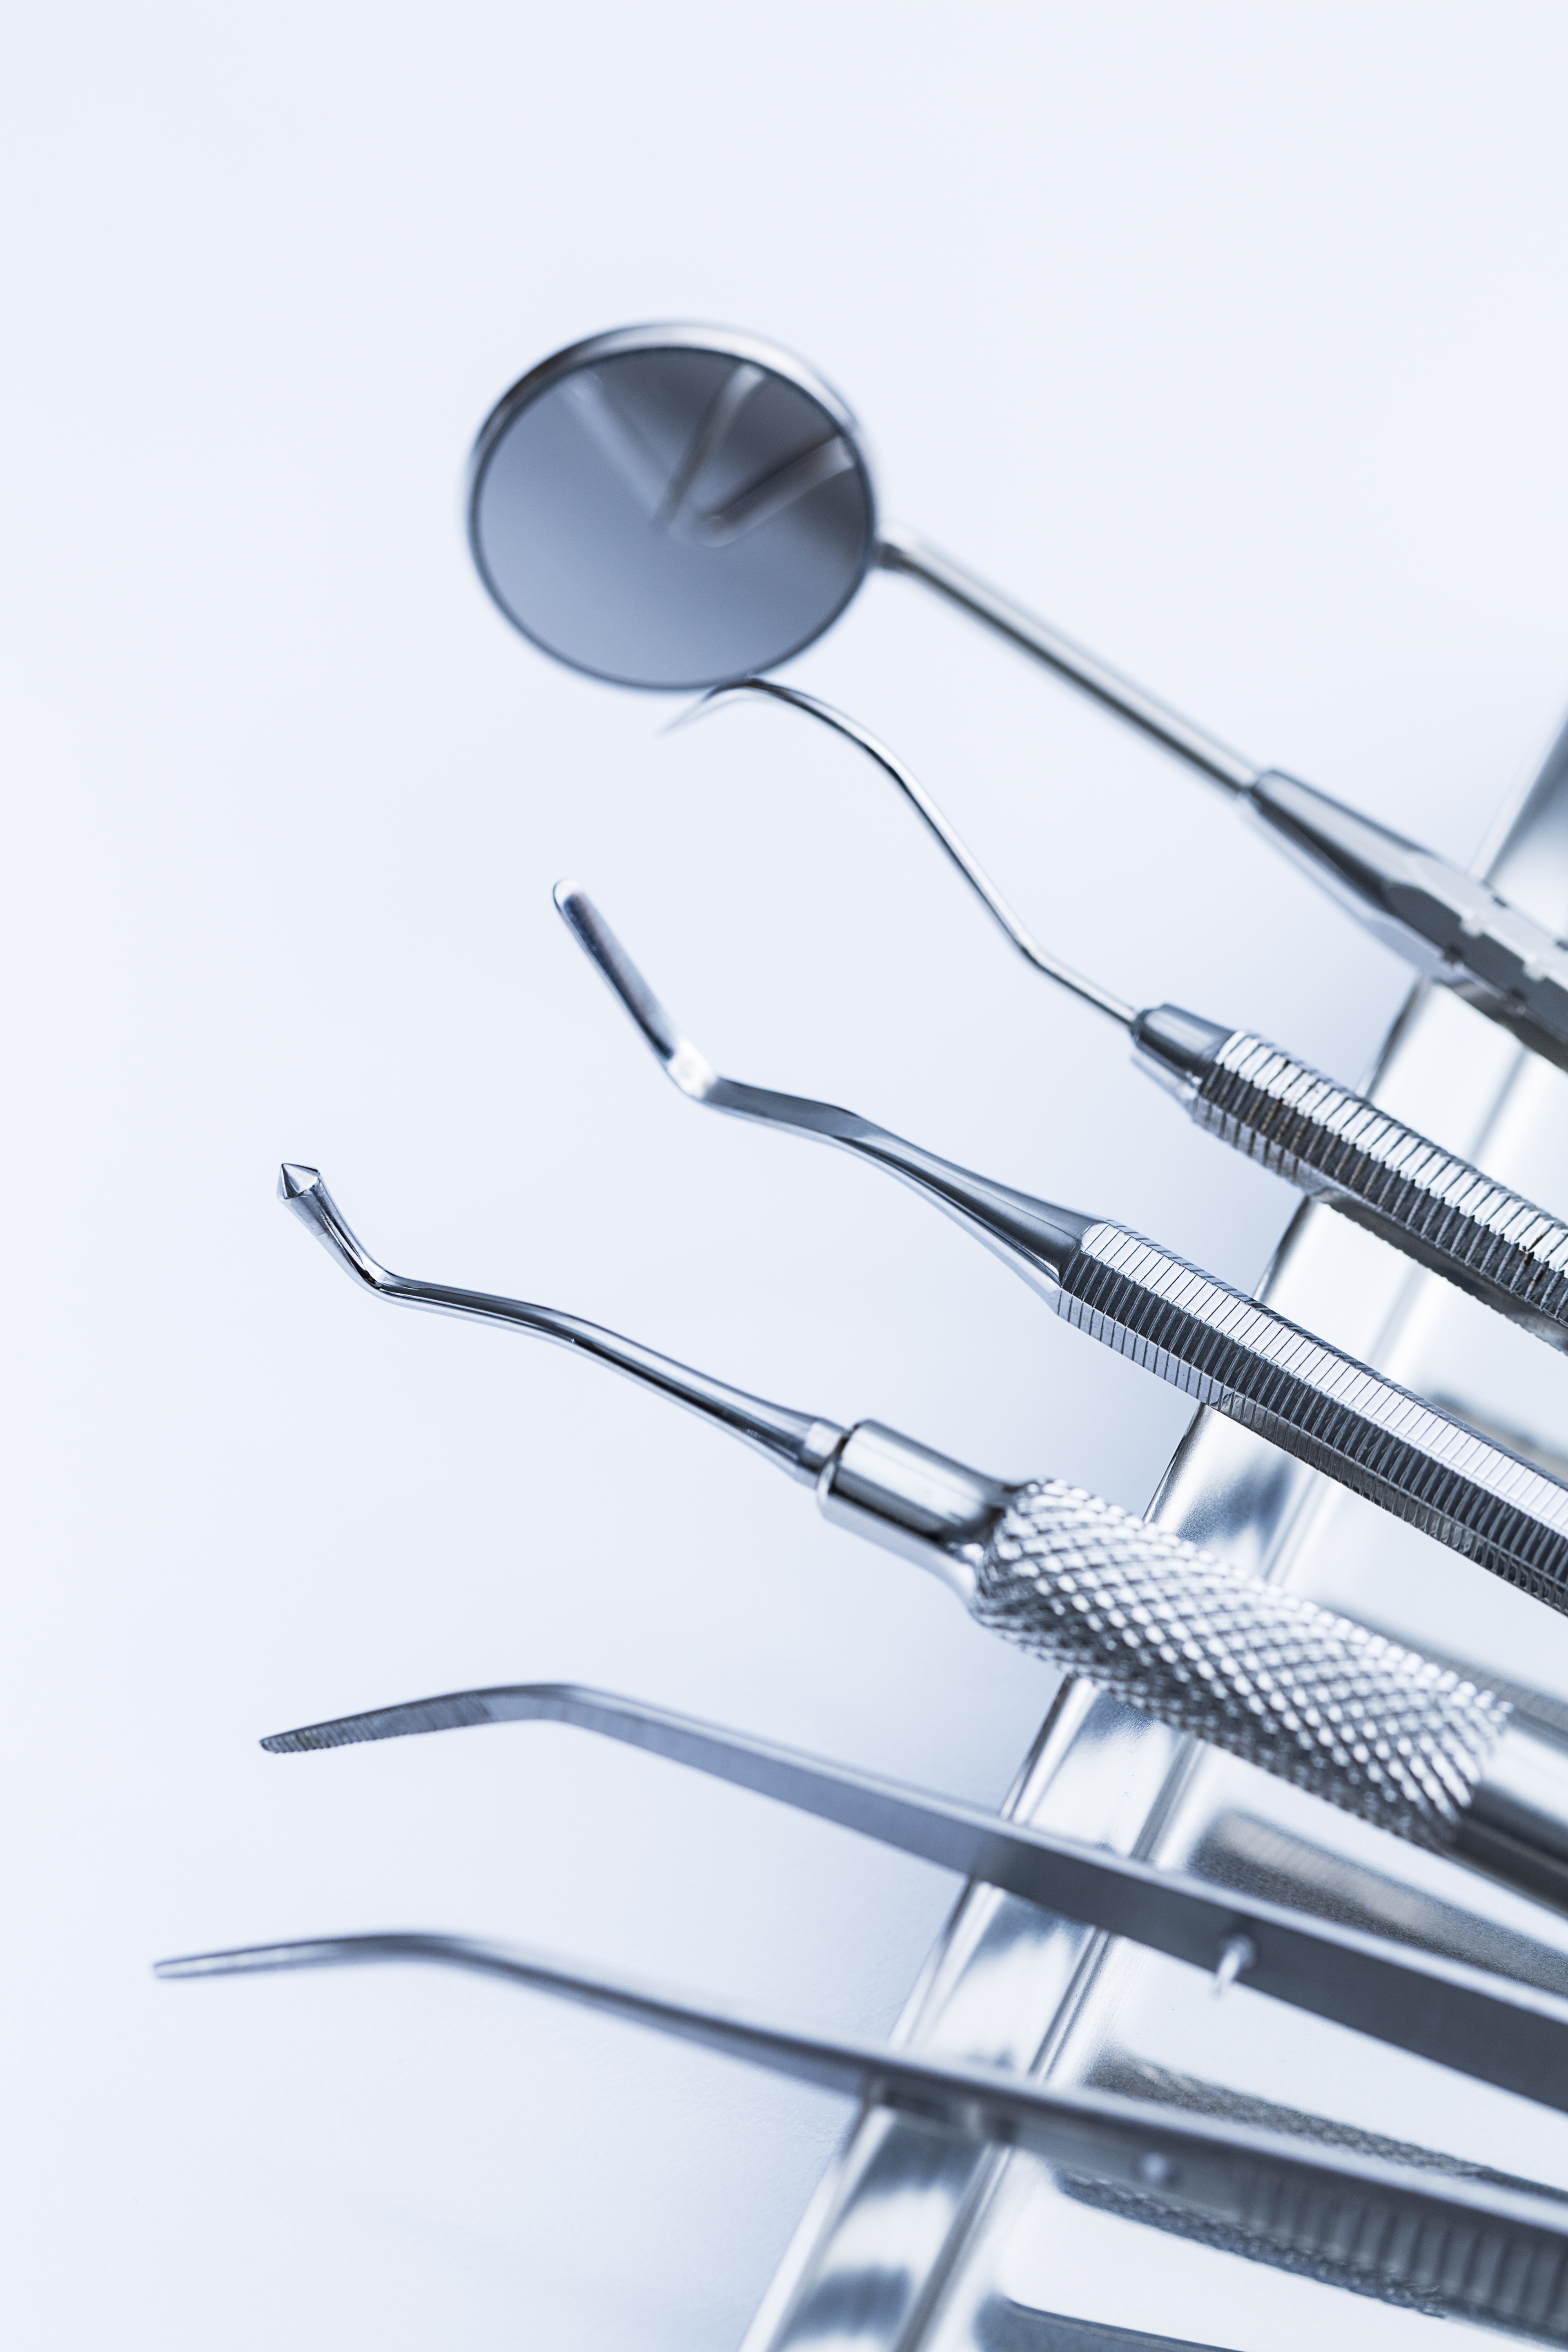 set-dental-tools-tray-mirror-tweezers-tamper-dentist